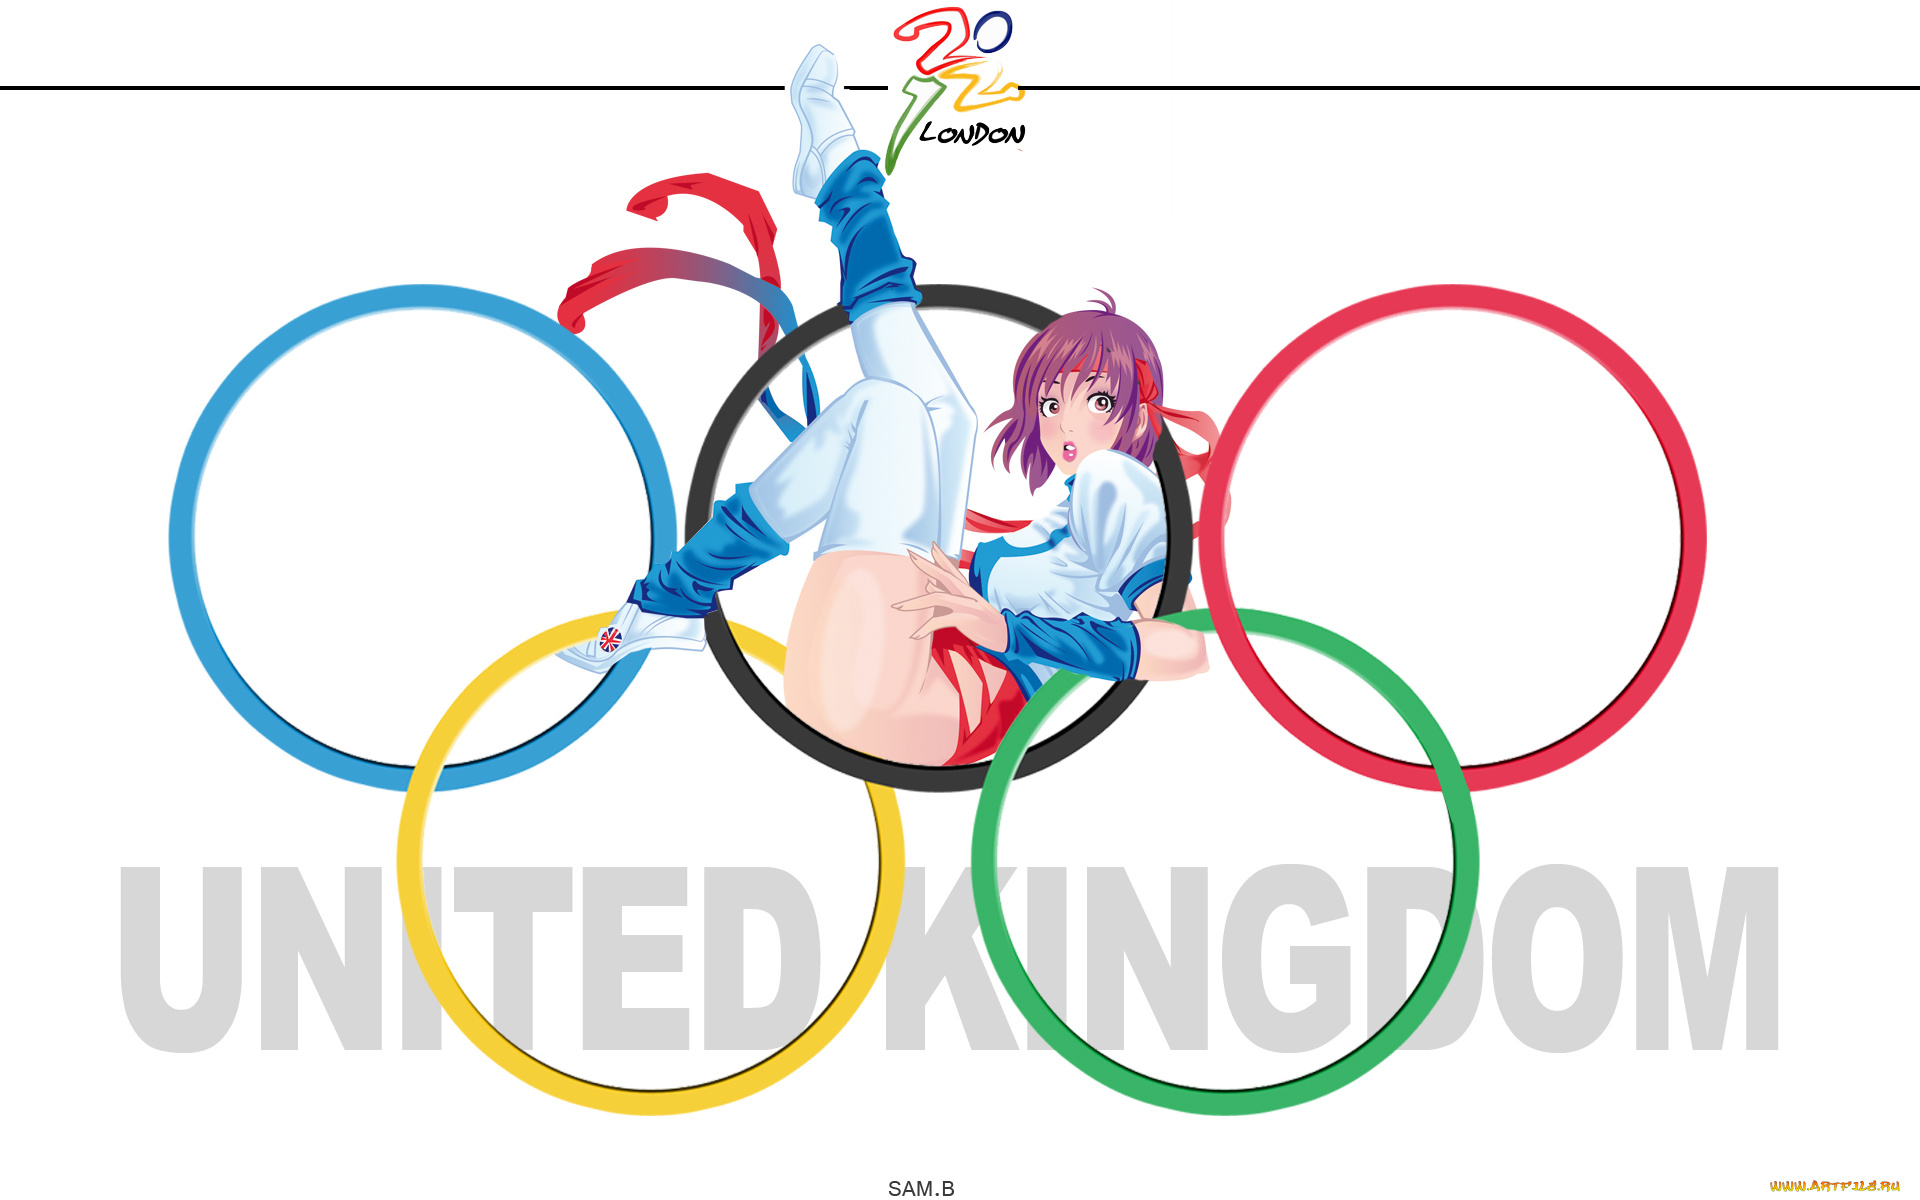 спорт, 3d, рисованные, олимпиада, 2012